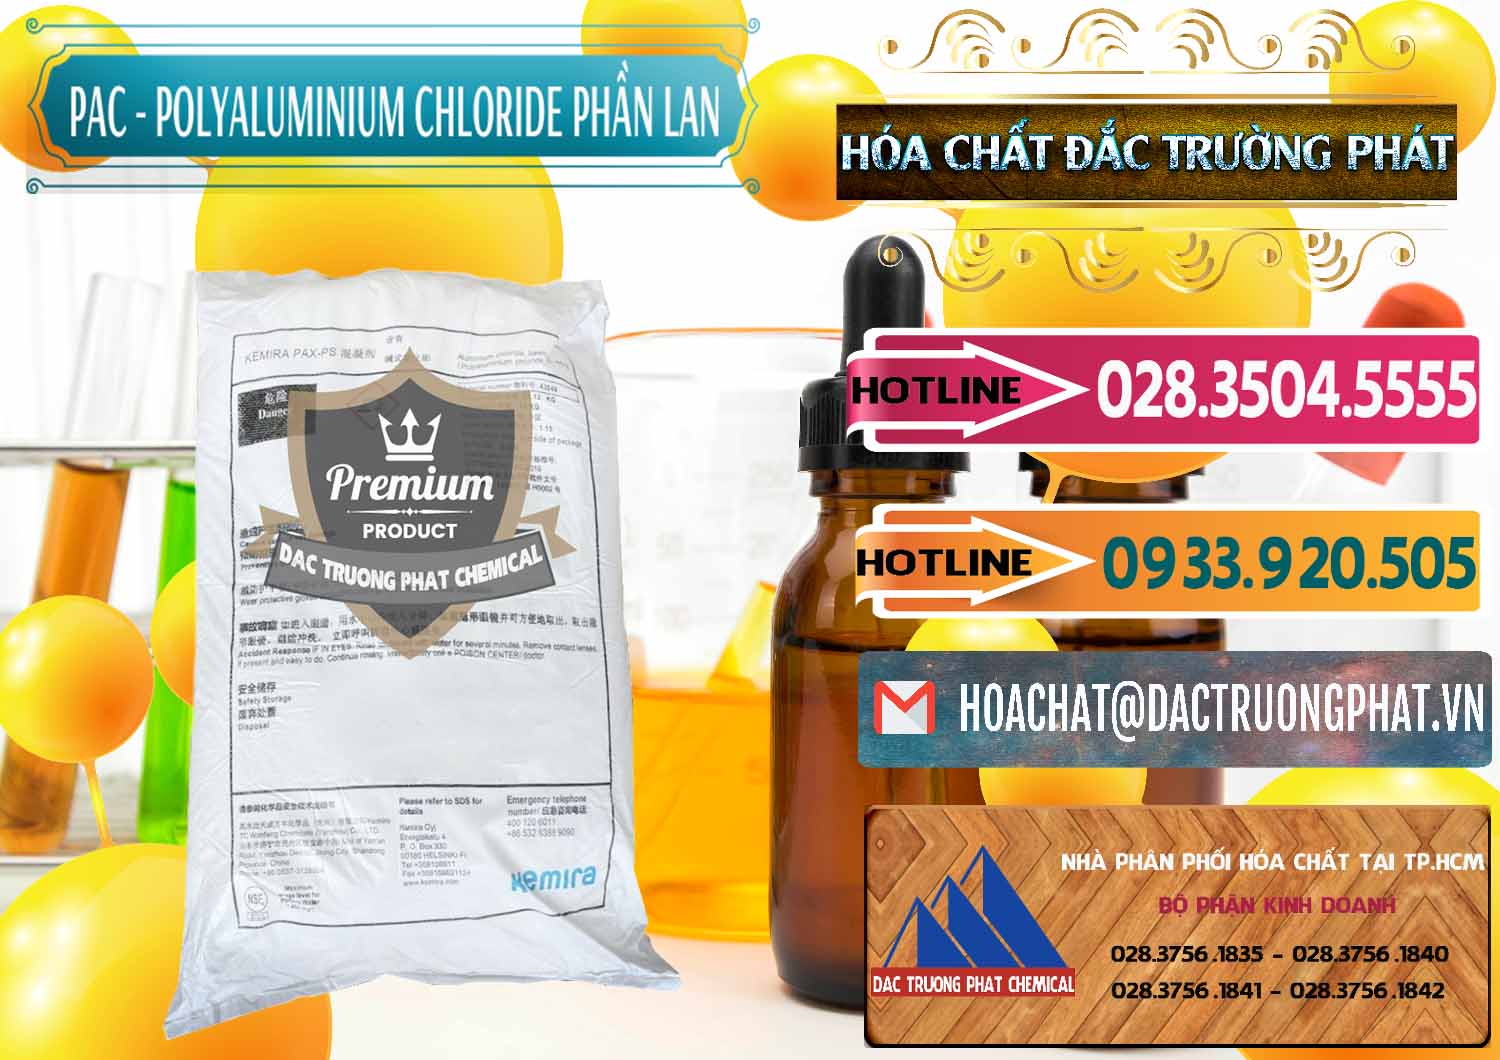 Công ty bán - cung cấp PAC - Polyaluminium Chloride Phần Lan Finland - 0383 - Cty cung cấp & phân phối hóa chất tại TP.HCM - dactruongphat.vn